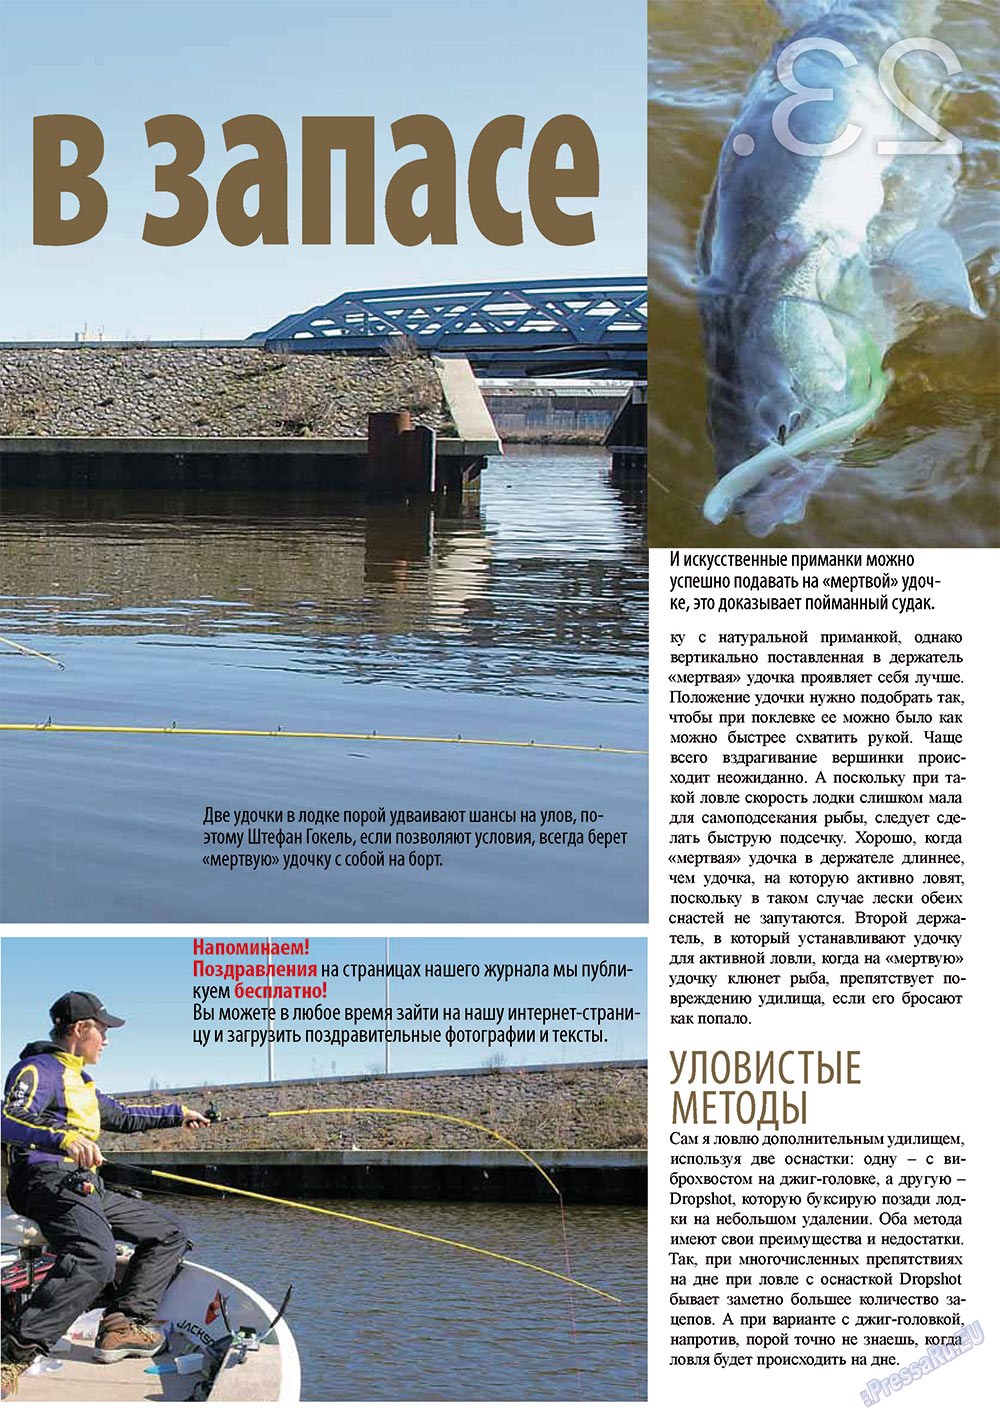 Рыбалка Plus, журнал. 2011 №11 стр.23